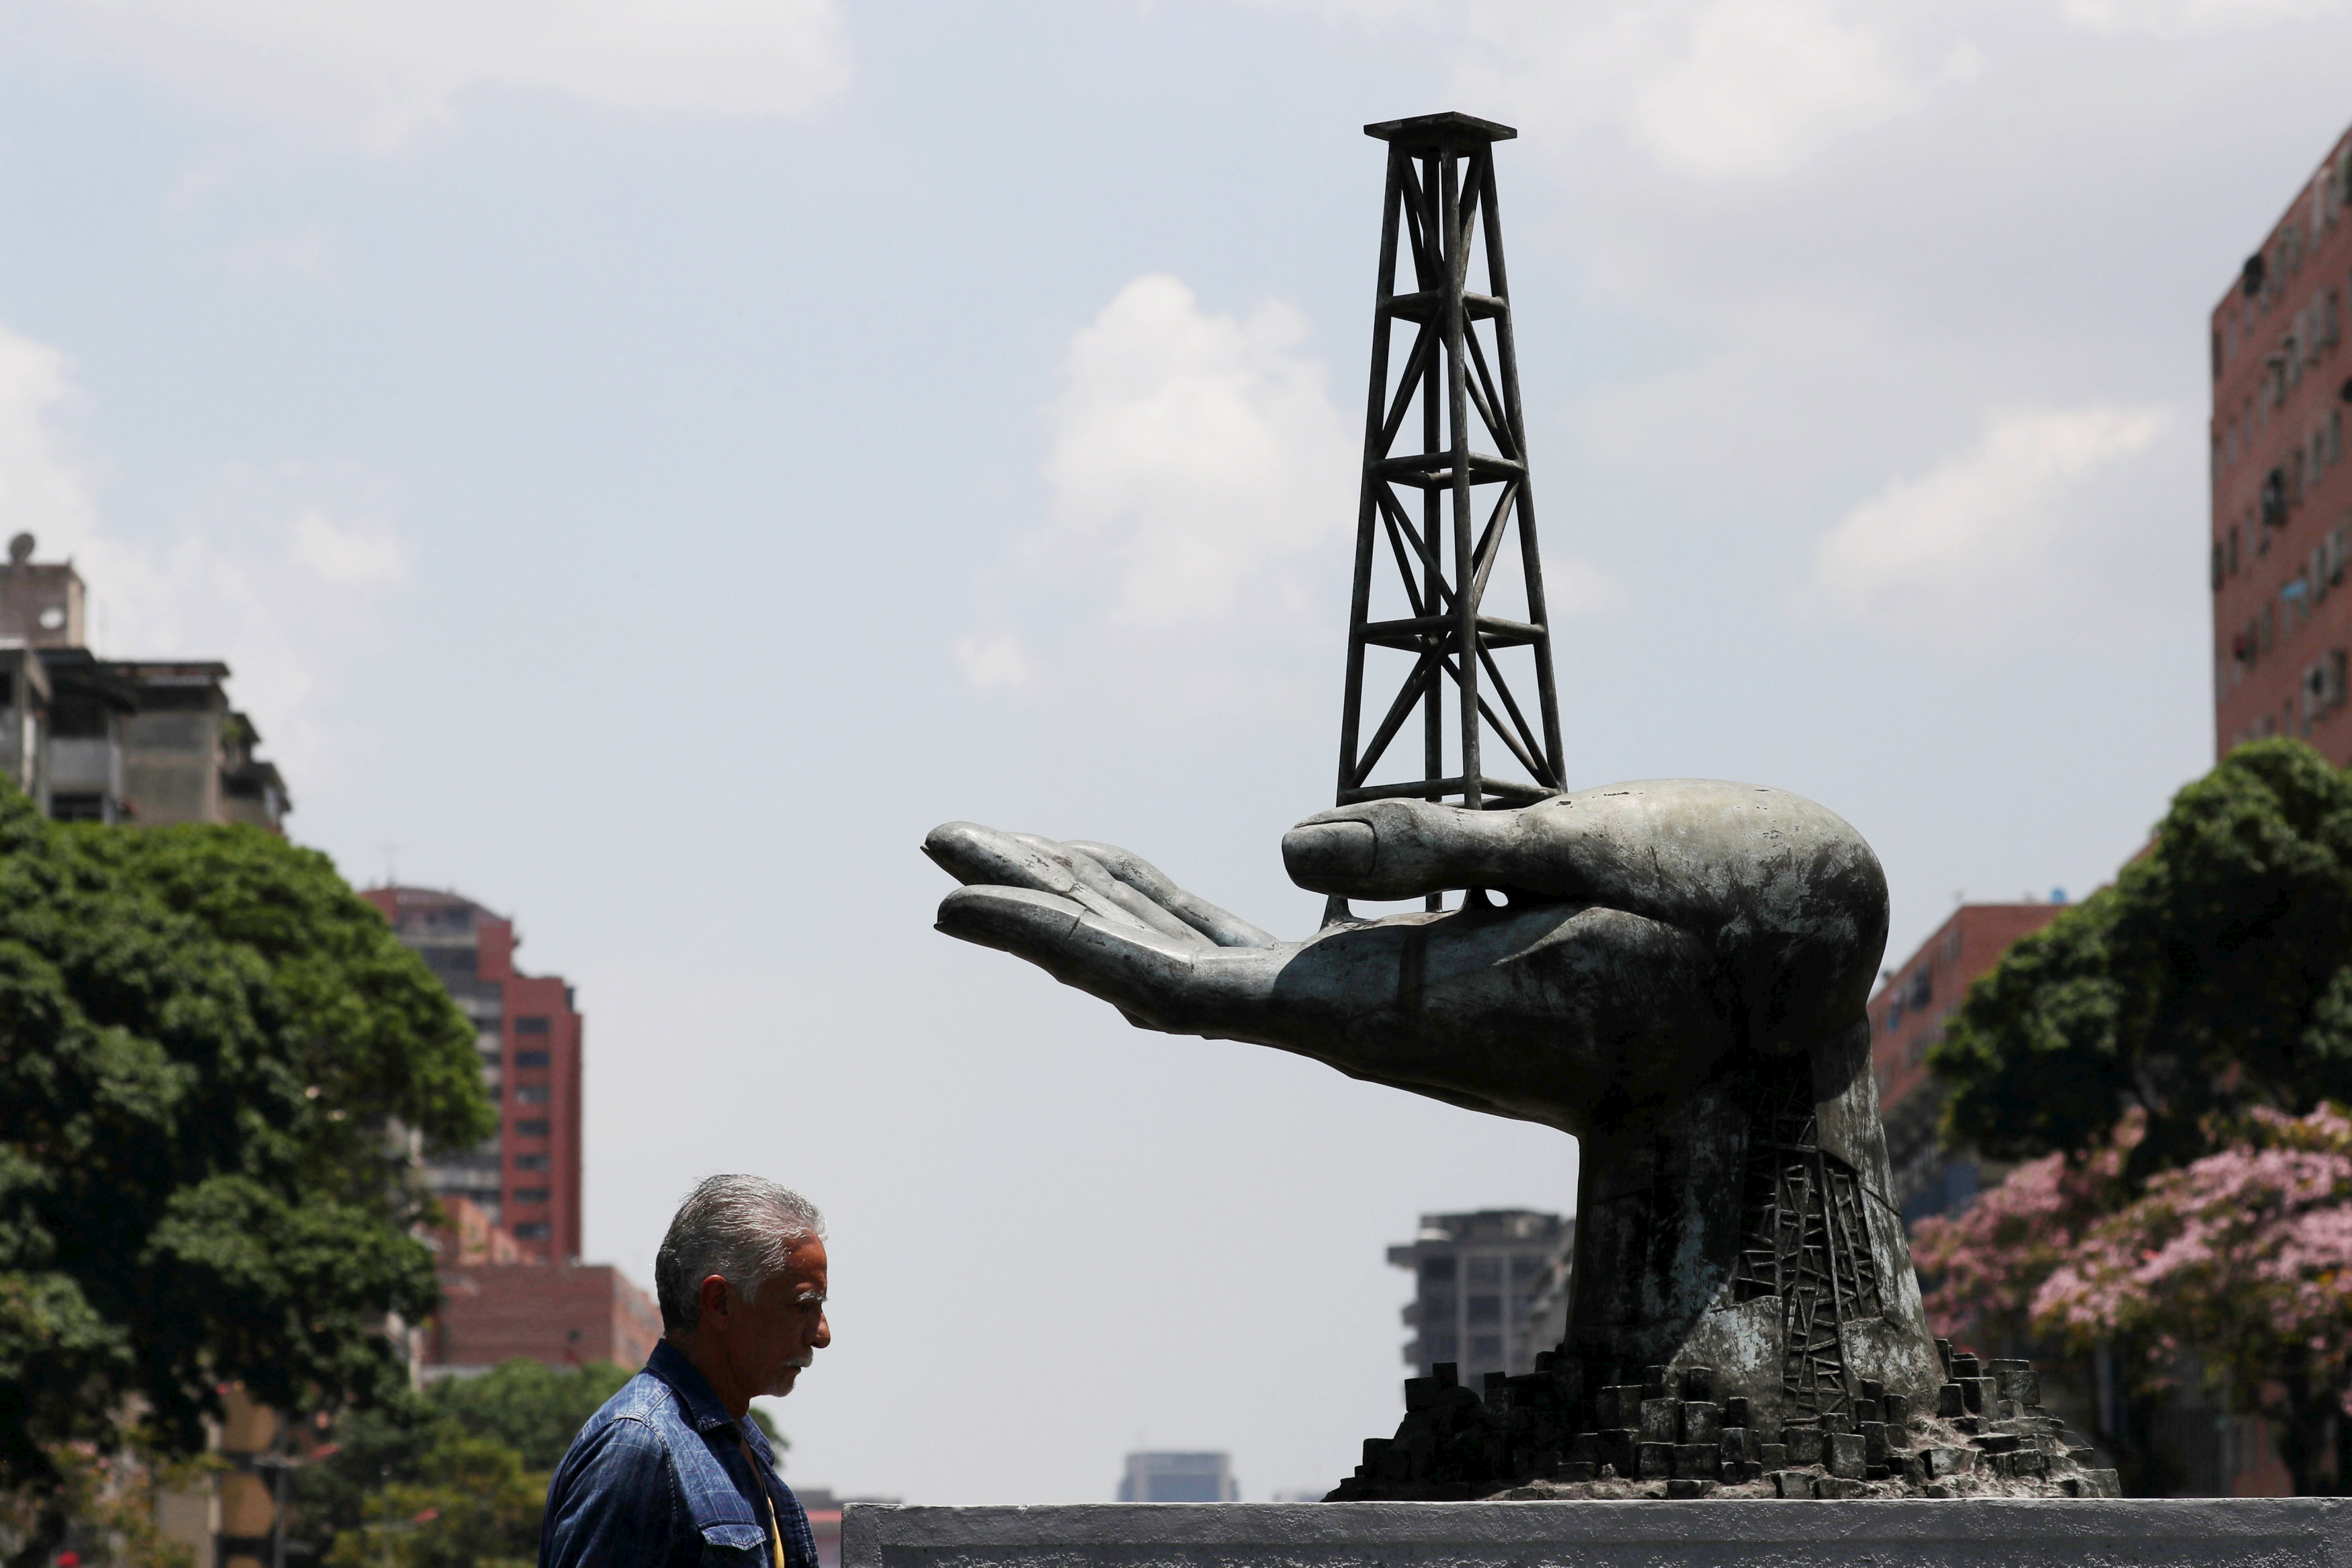 Se cumplen 10 semanas consecutivas que refinadores de EEUU no compran petróleo a Venezuela